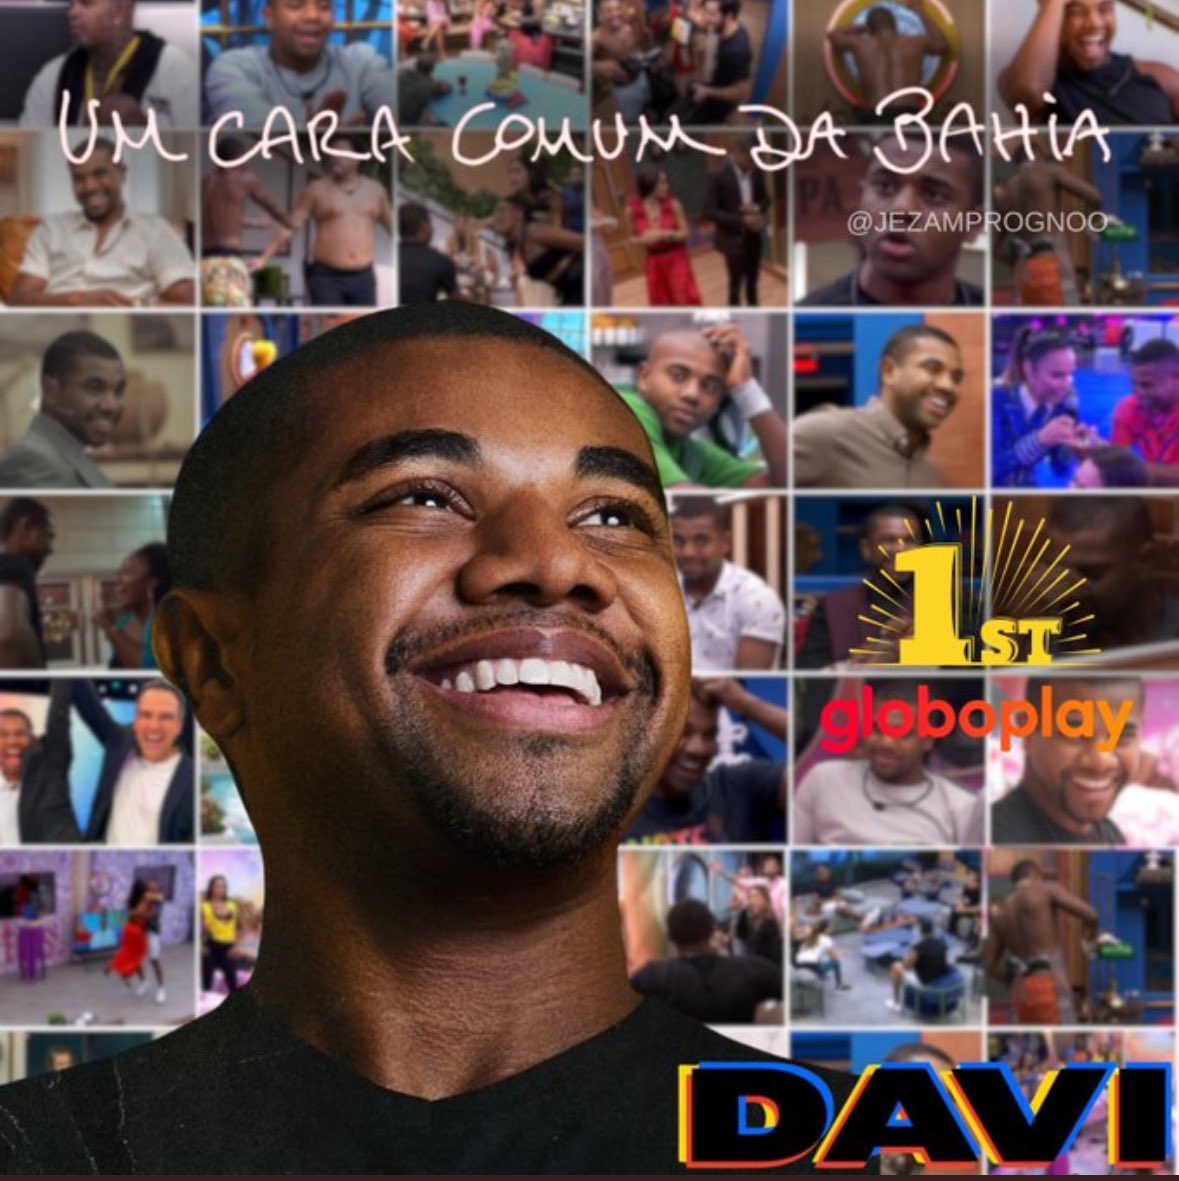 O documentário “Um cara comum da Bahia” está em primeiro lugar, já assistiram?🚨

@globoplay 
#UmCaraComumDaBahia #TeamDavi